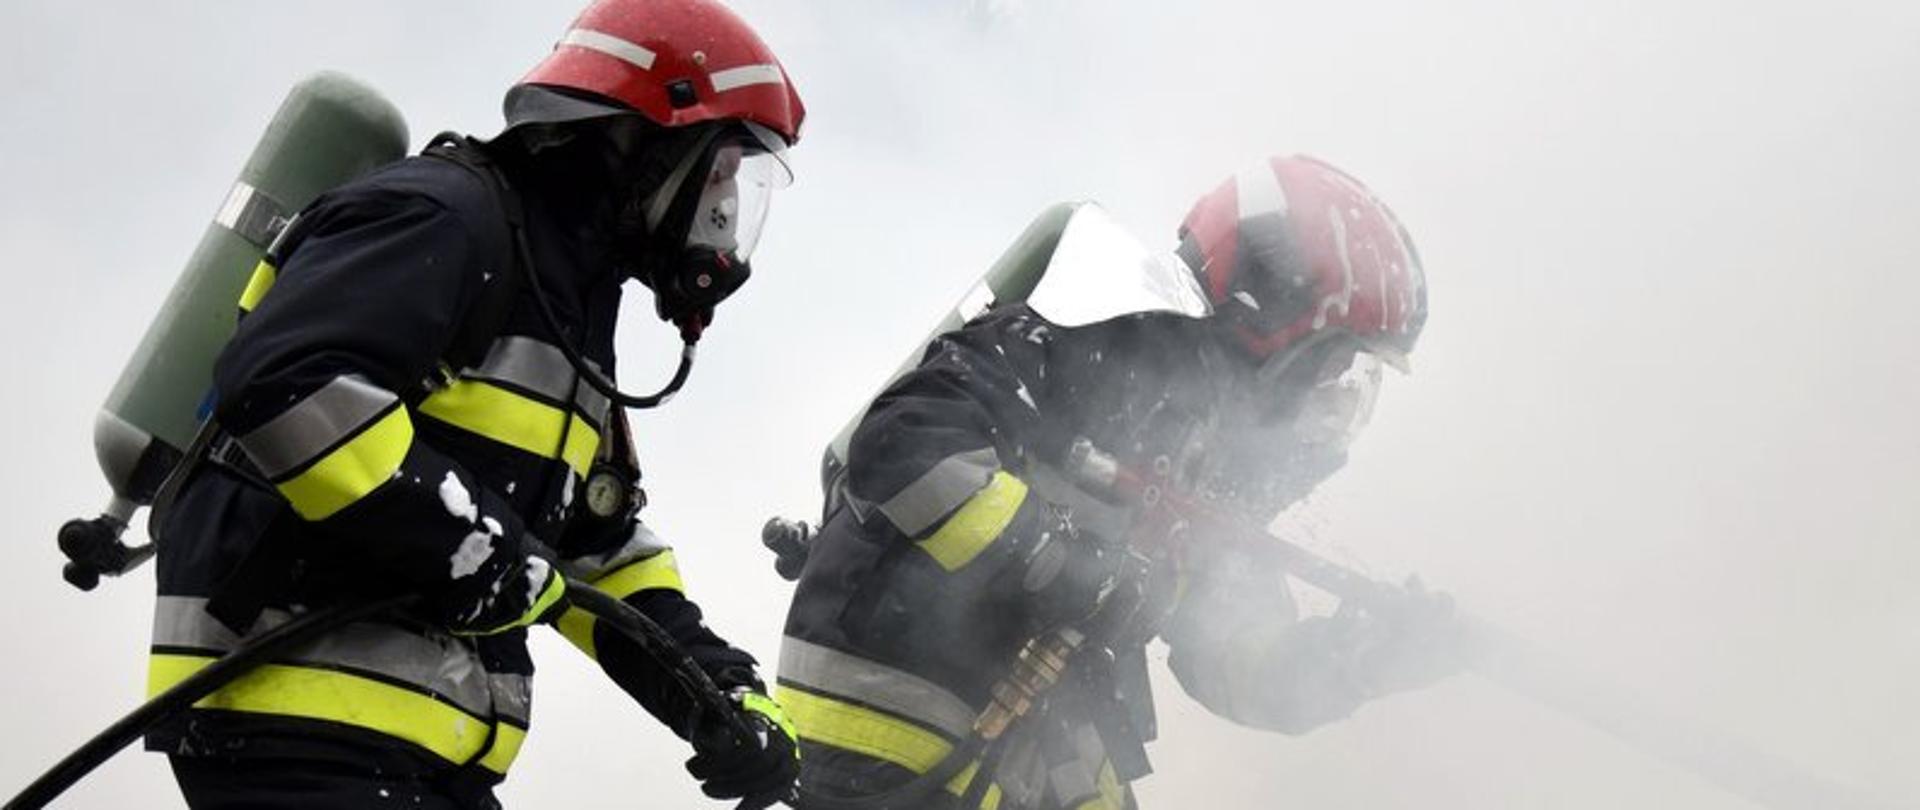 Dwóch strażaków ubranych w ubrania specjalne (nomexy) w hełmach i aparatach powietrznych stoi w zadymianym pomieszczeniu, gasząc niewidoczny na zdjęciu ogień